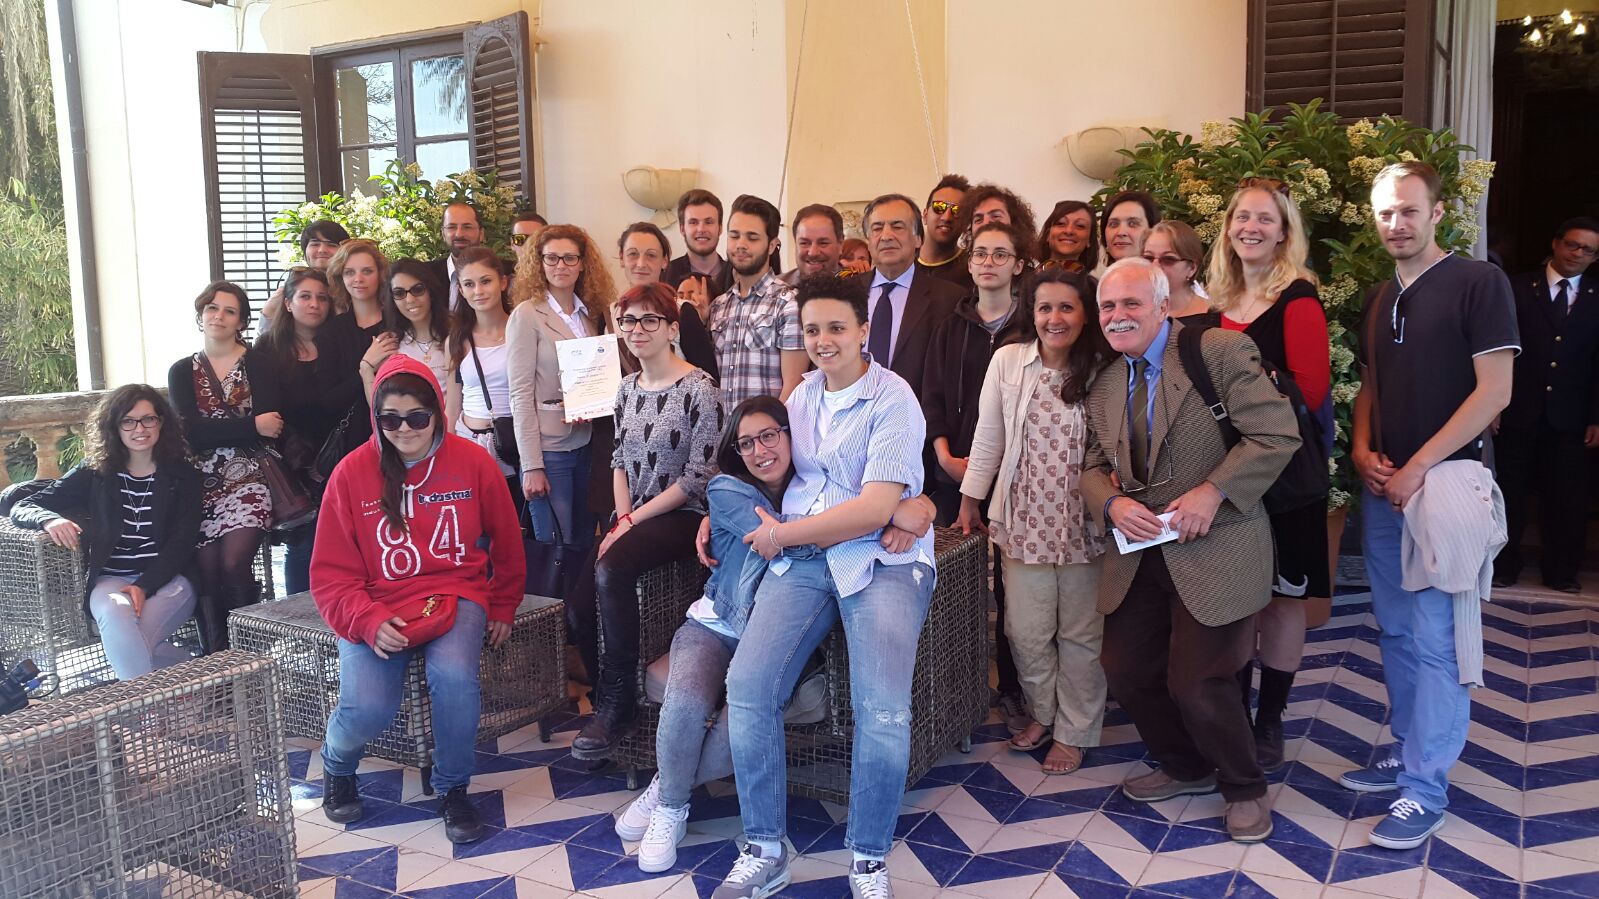 Il vero senso della parola “scambio” per i giovani di Palermo e Montpellier